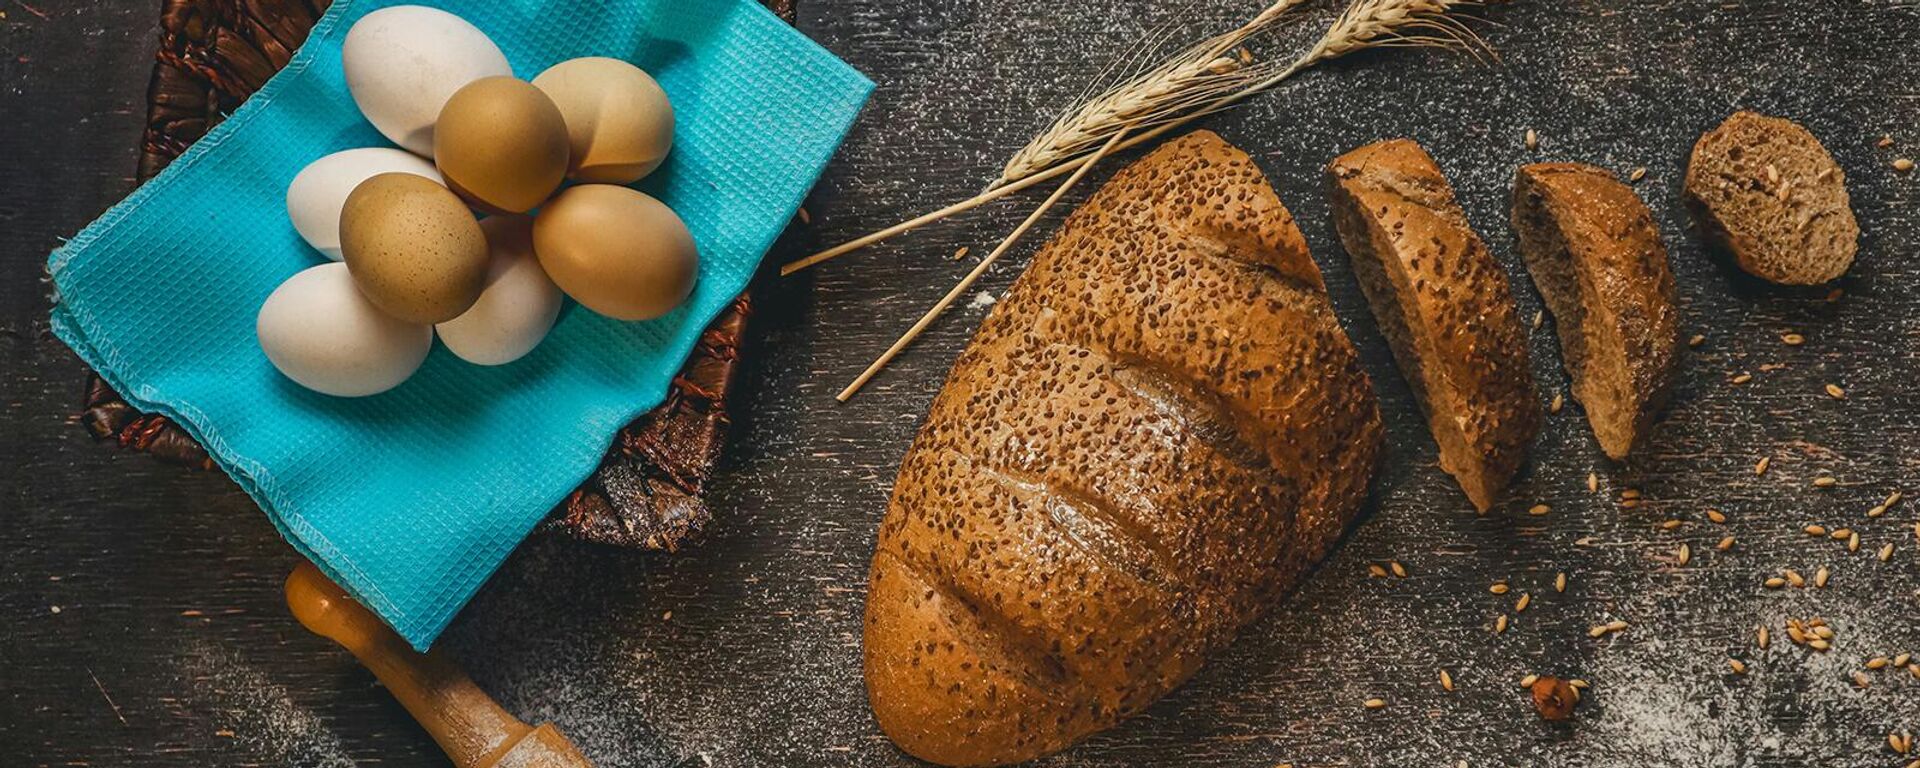 Нарезанный хлеб, яйца и молоко на столе - Sputnik Армения, 1920, 11.03.2021